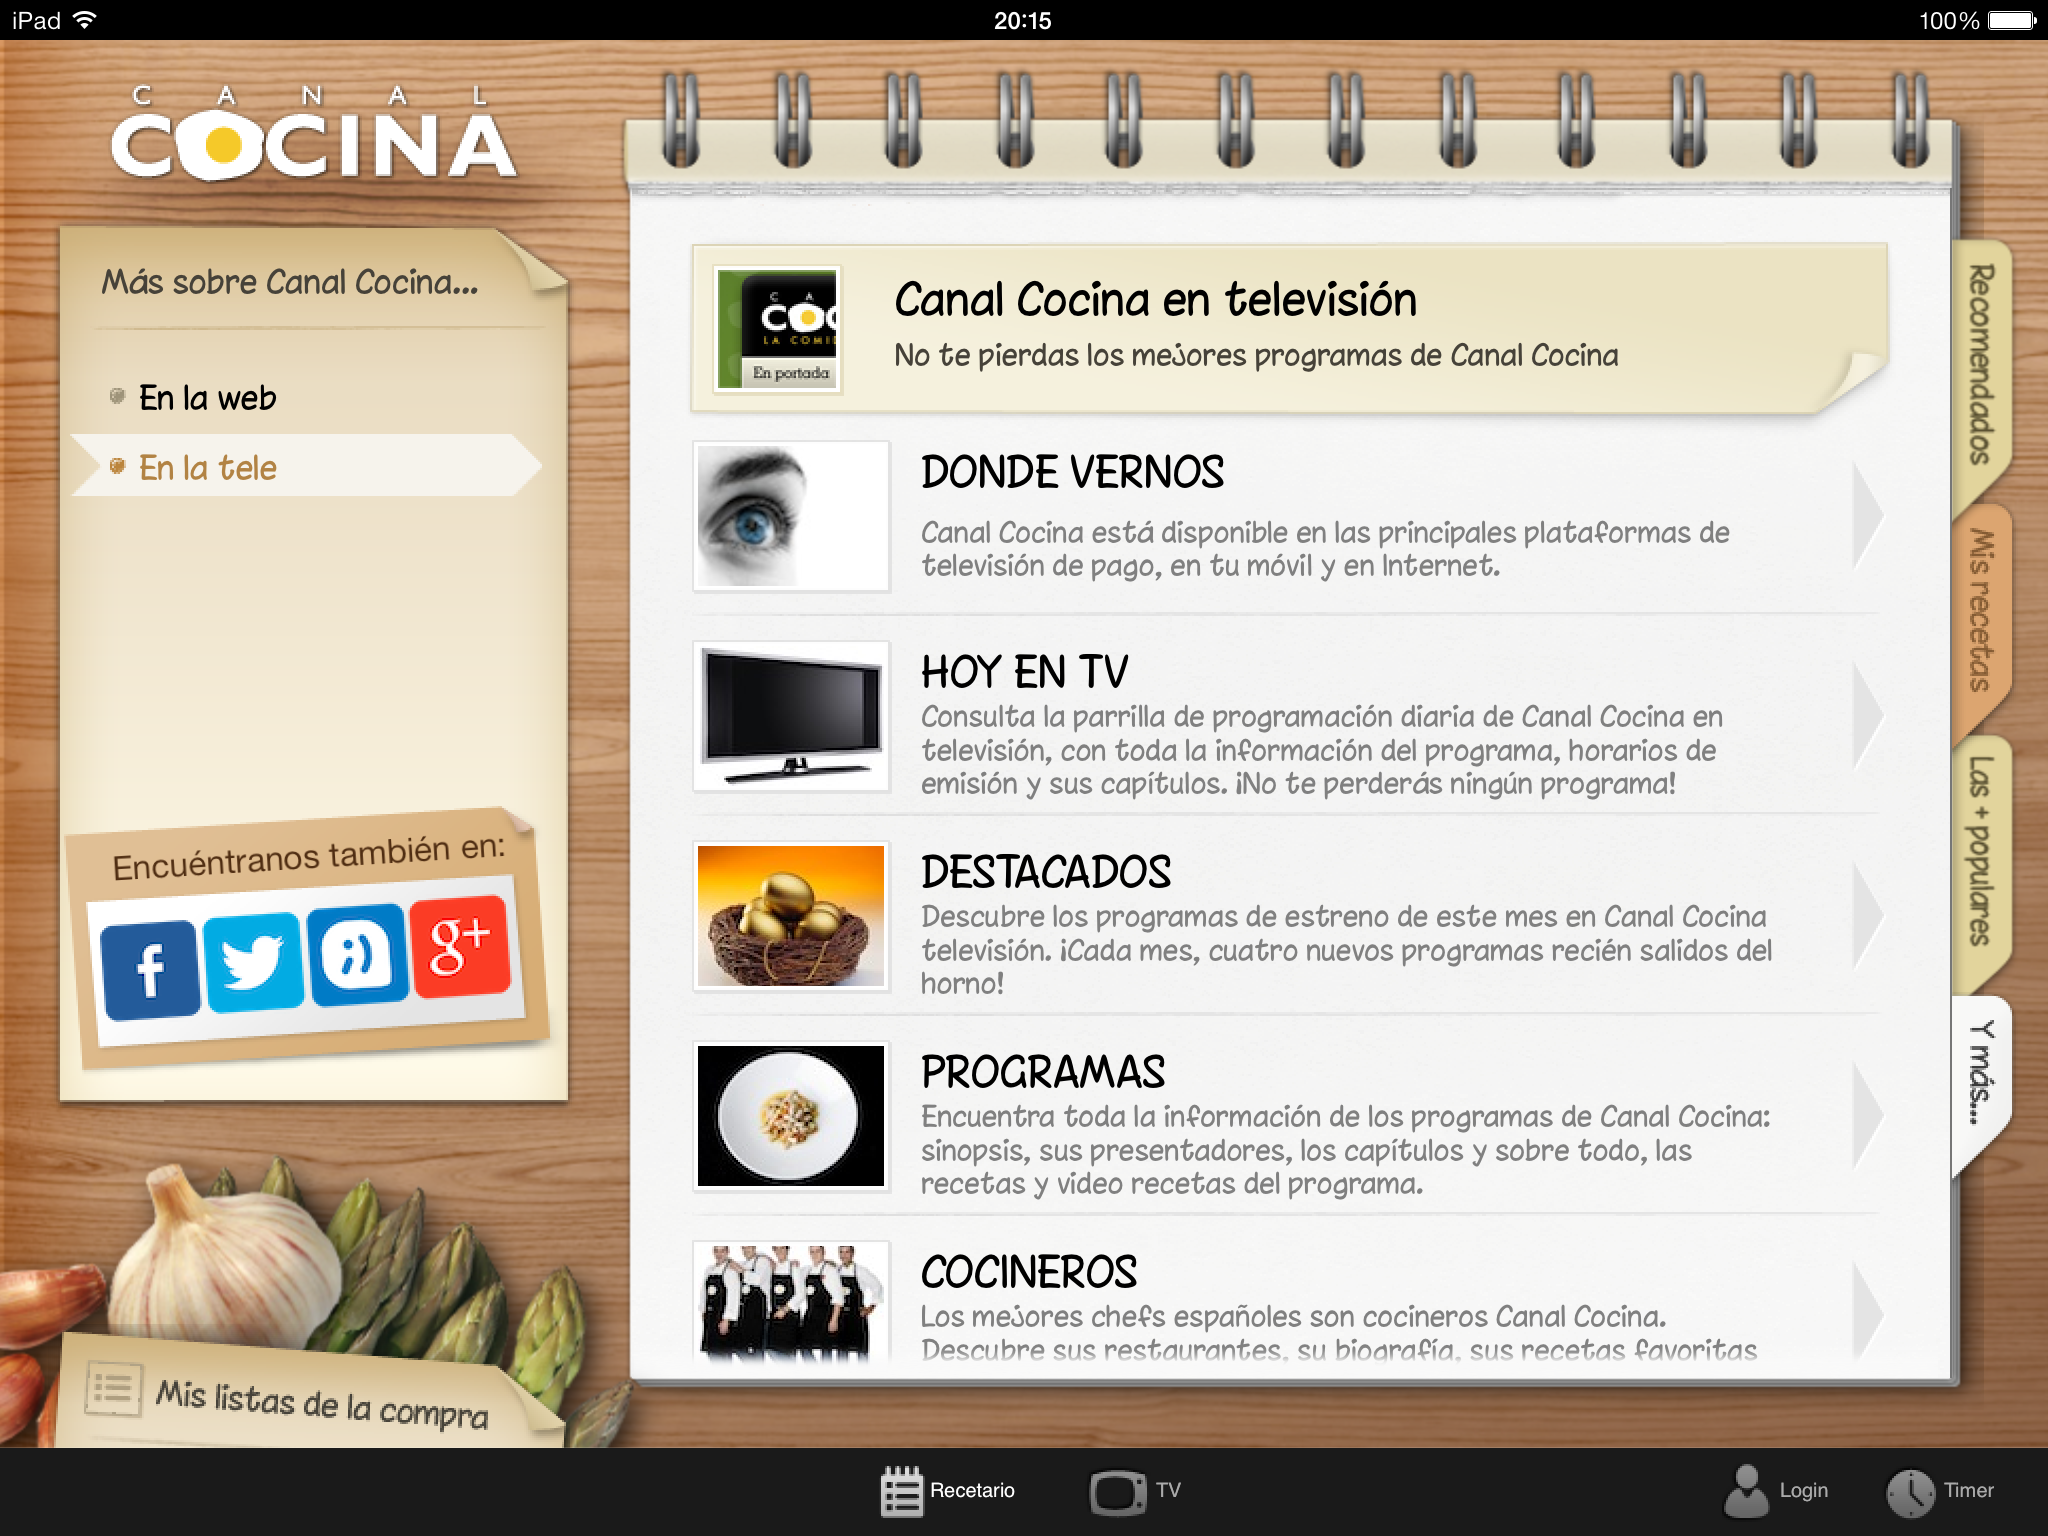 La app de Canal Cocina para el iPad